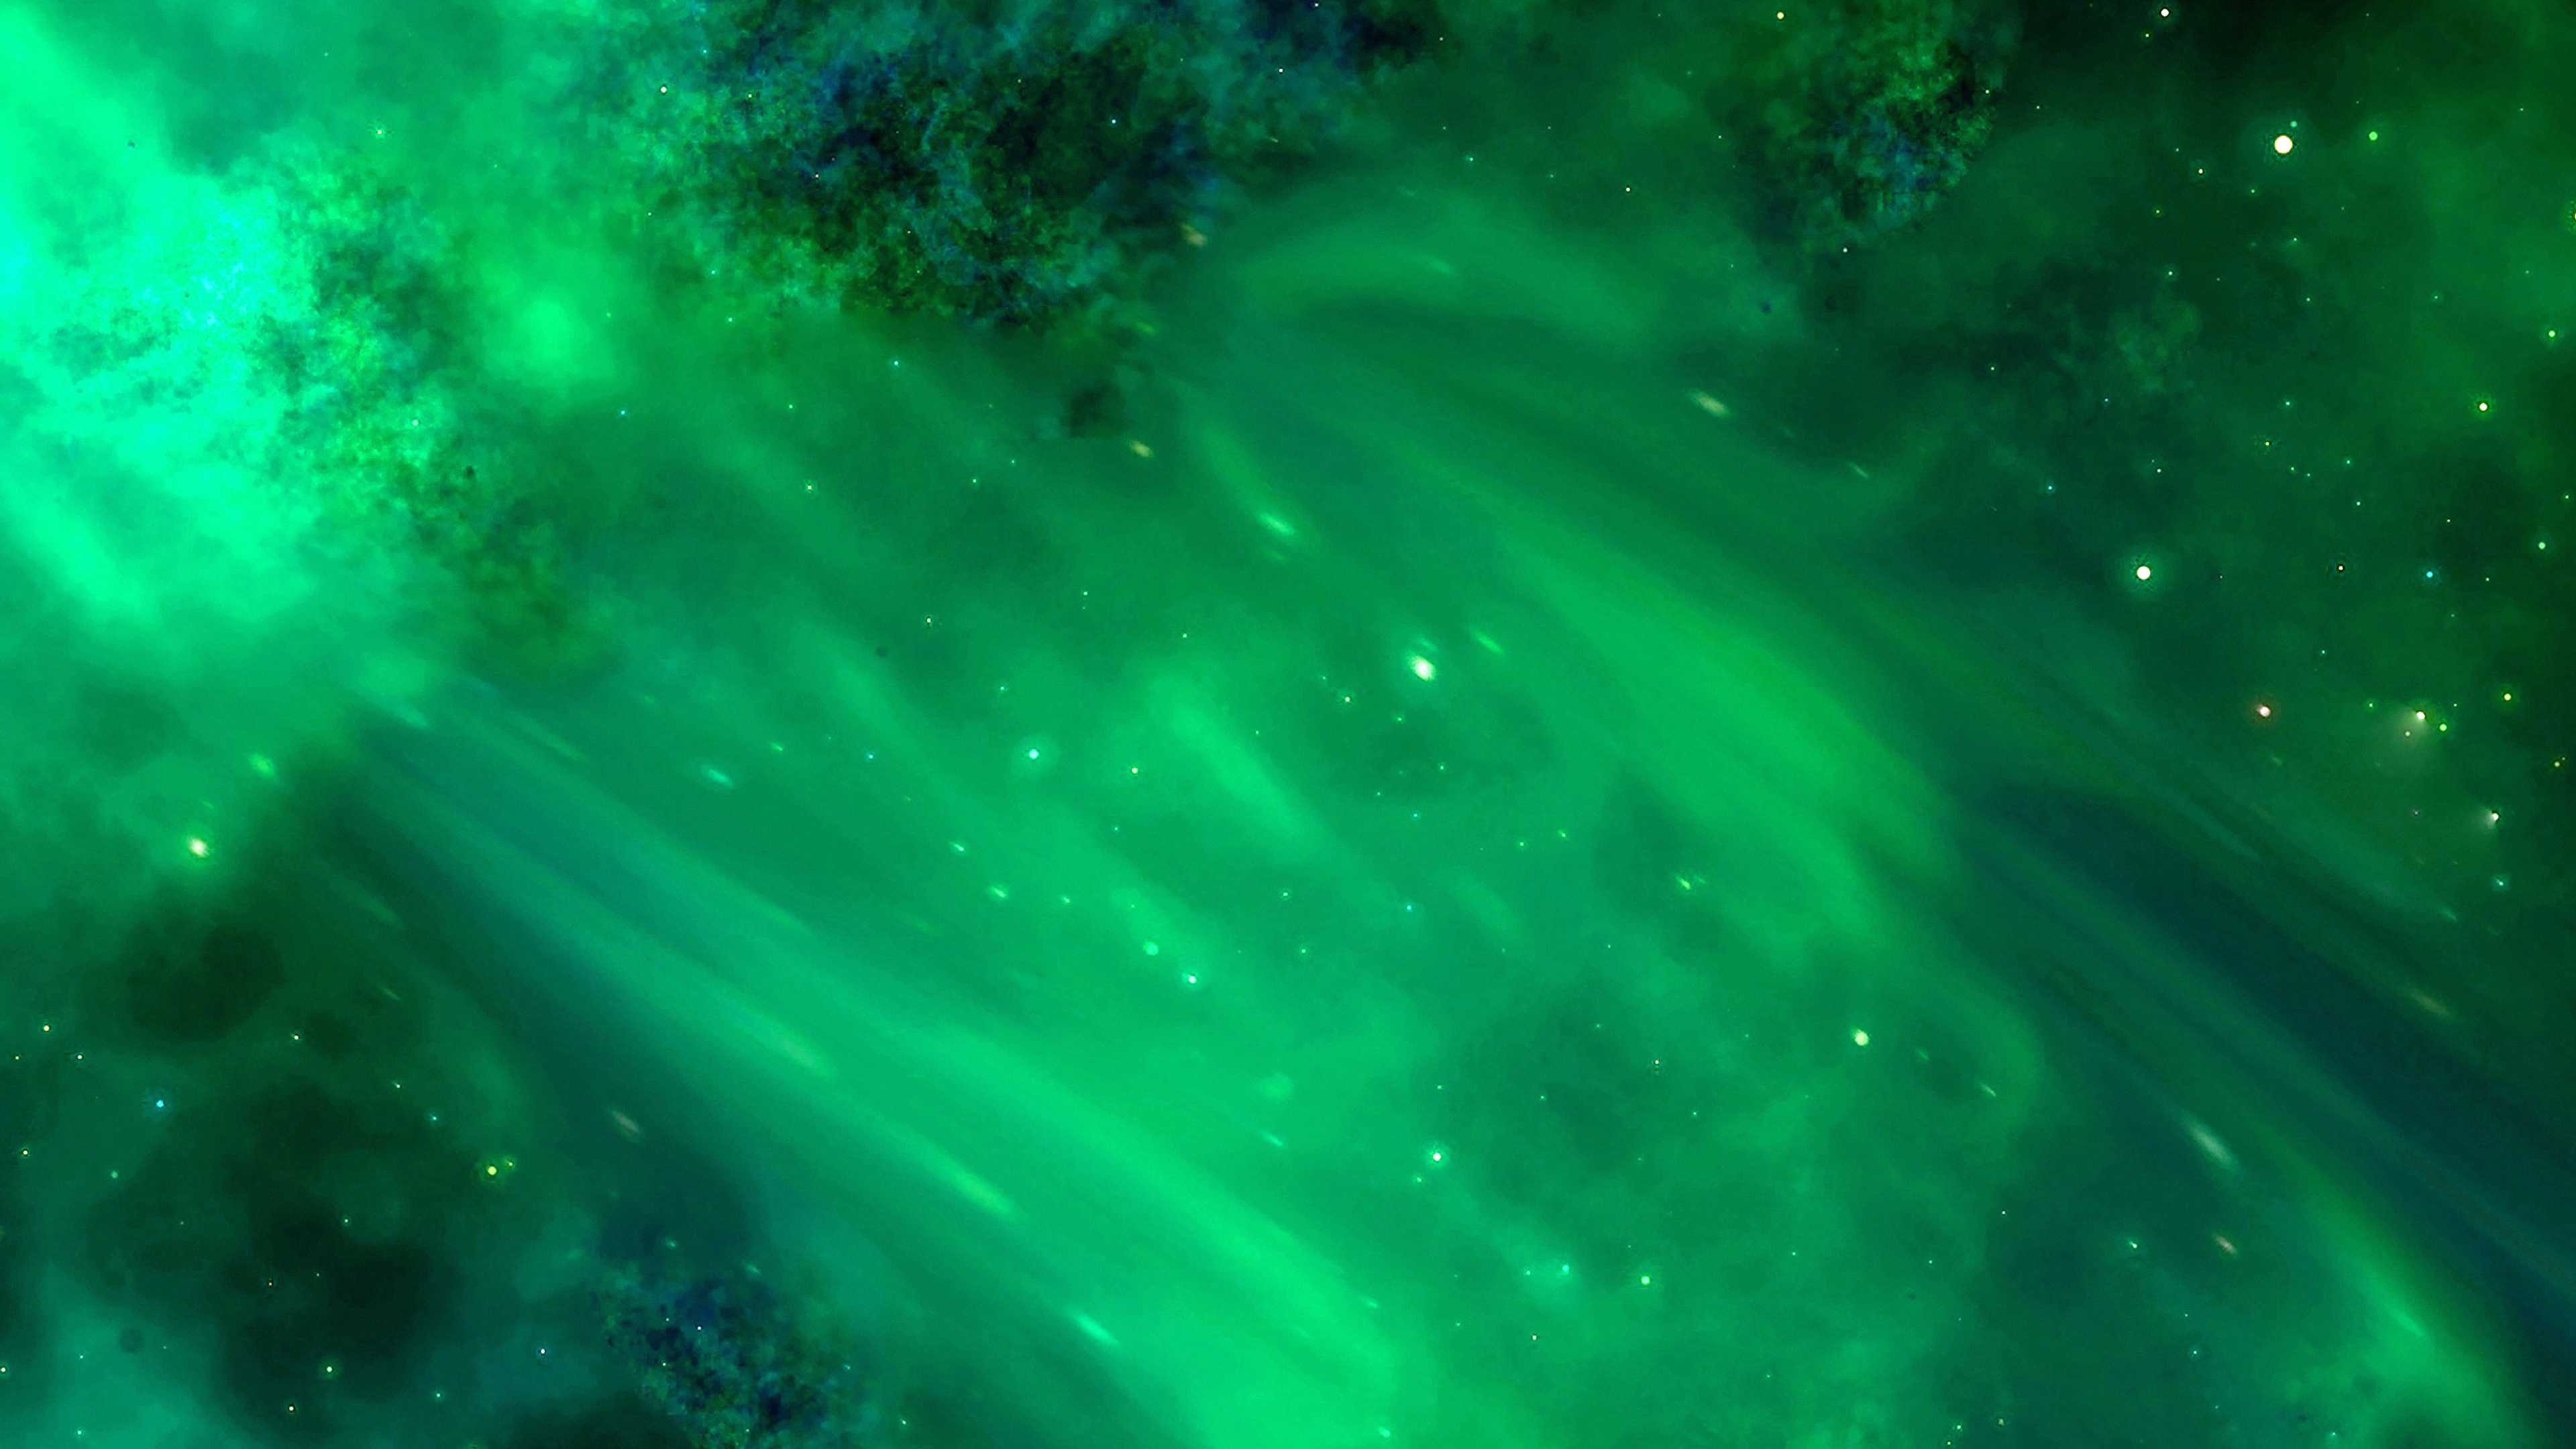 宇宙, 明星, 绿色的, 性质, 天文学对象 壁纸 3840x2160 允许